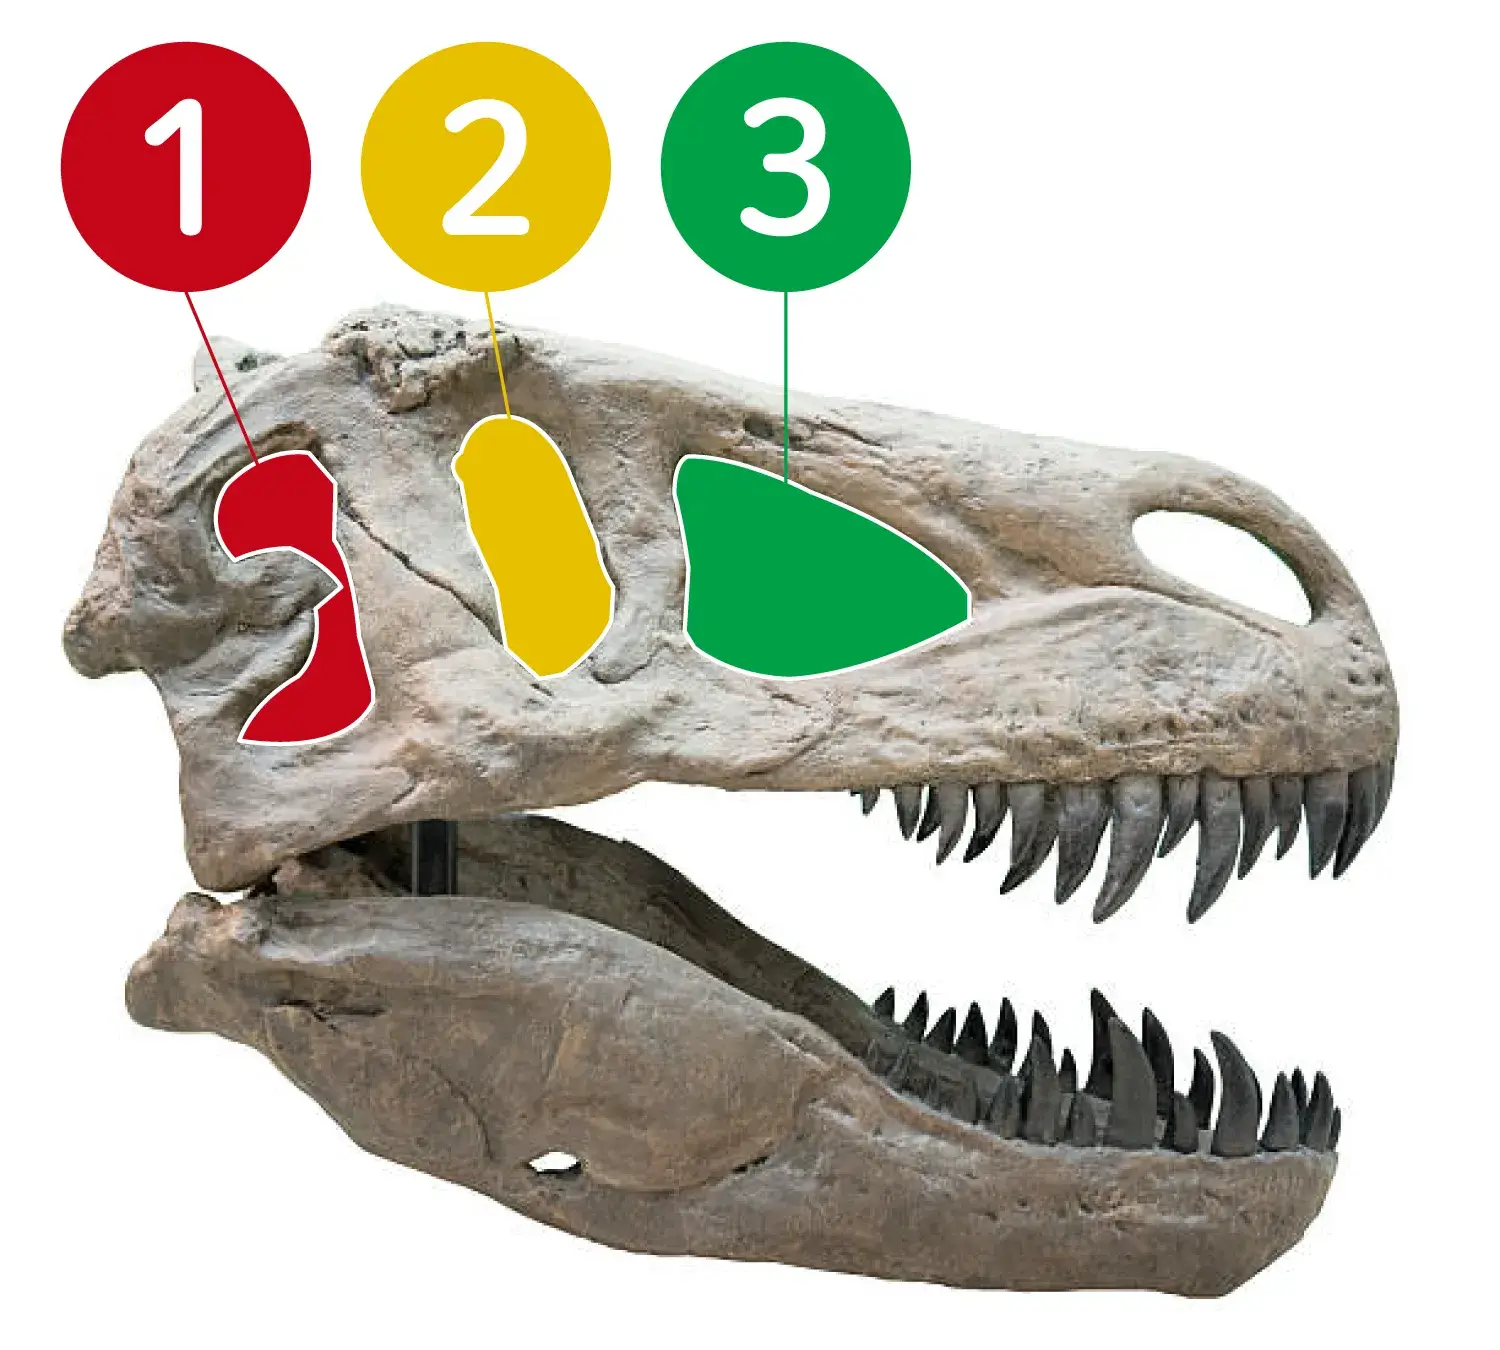 ティラノサウルスの目はどの穴にあった？